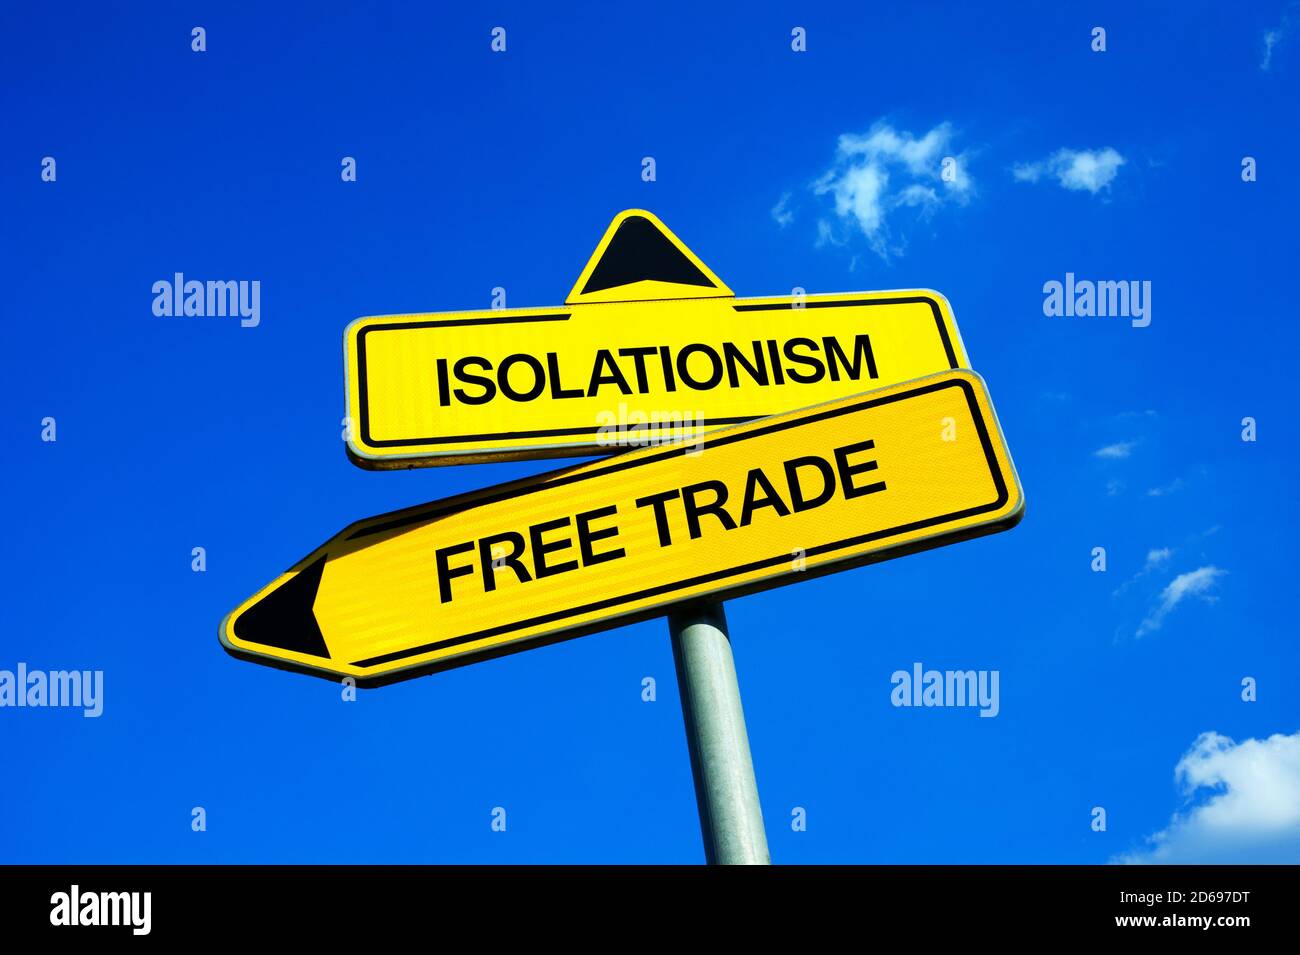 Isolazionismo vs libero Commercio - segnale di traffico con due opzioni - barriera economica e protezionismo dei produttori locali e del lavoro contro la libertà di internation Foto Stock